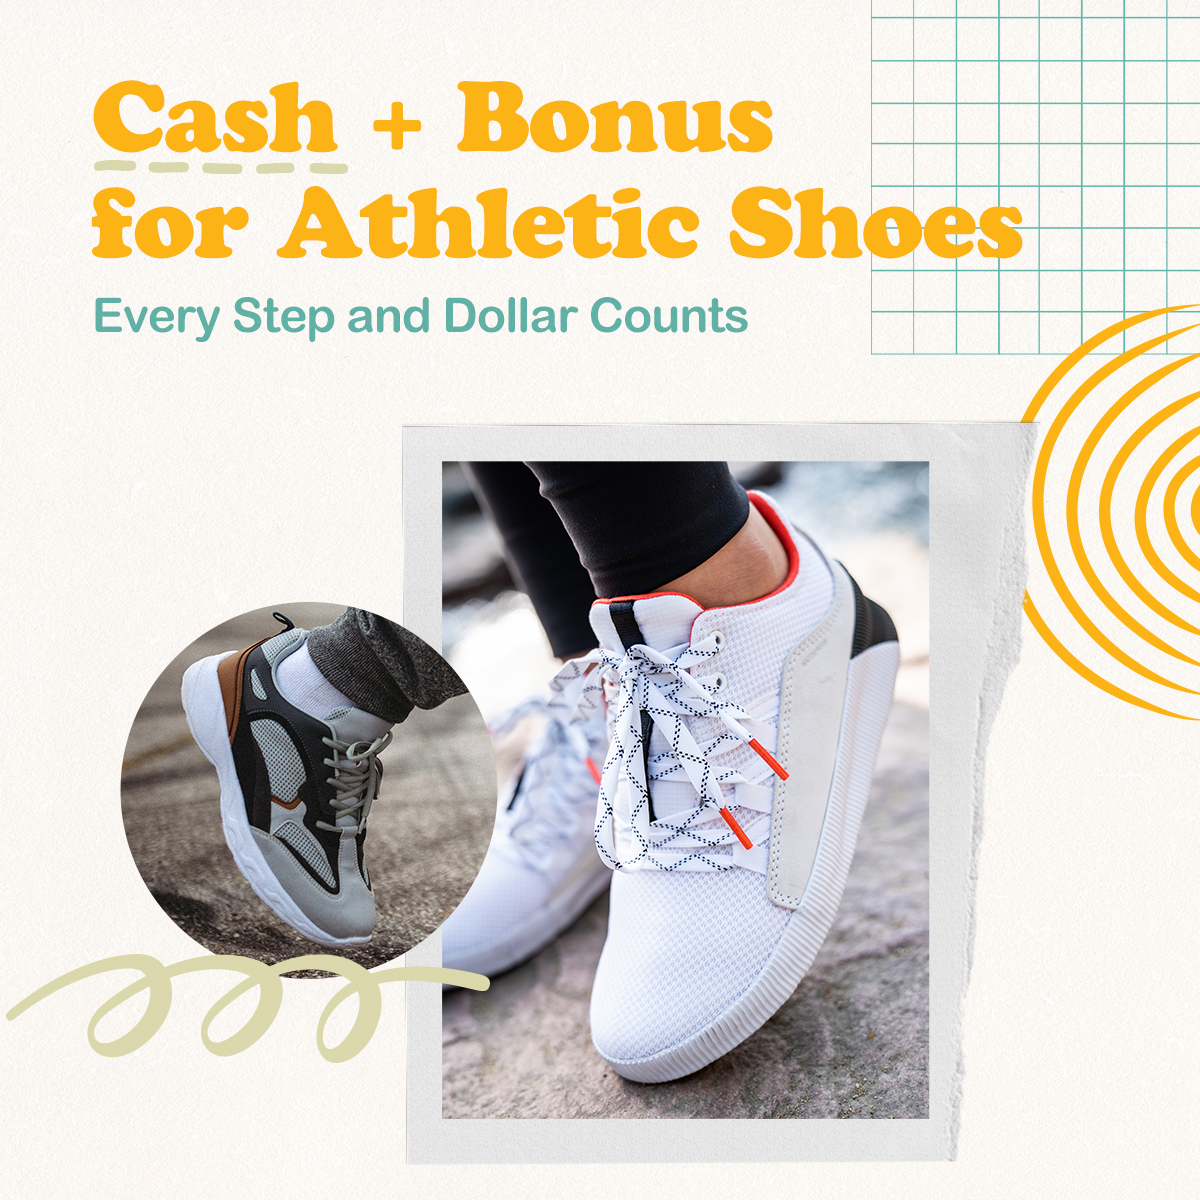 Cash + Bonus for Athletic Shoes